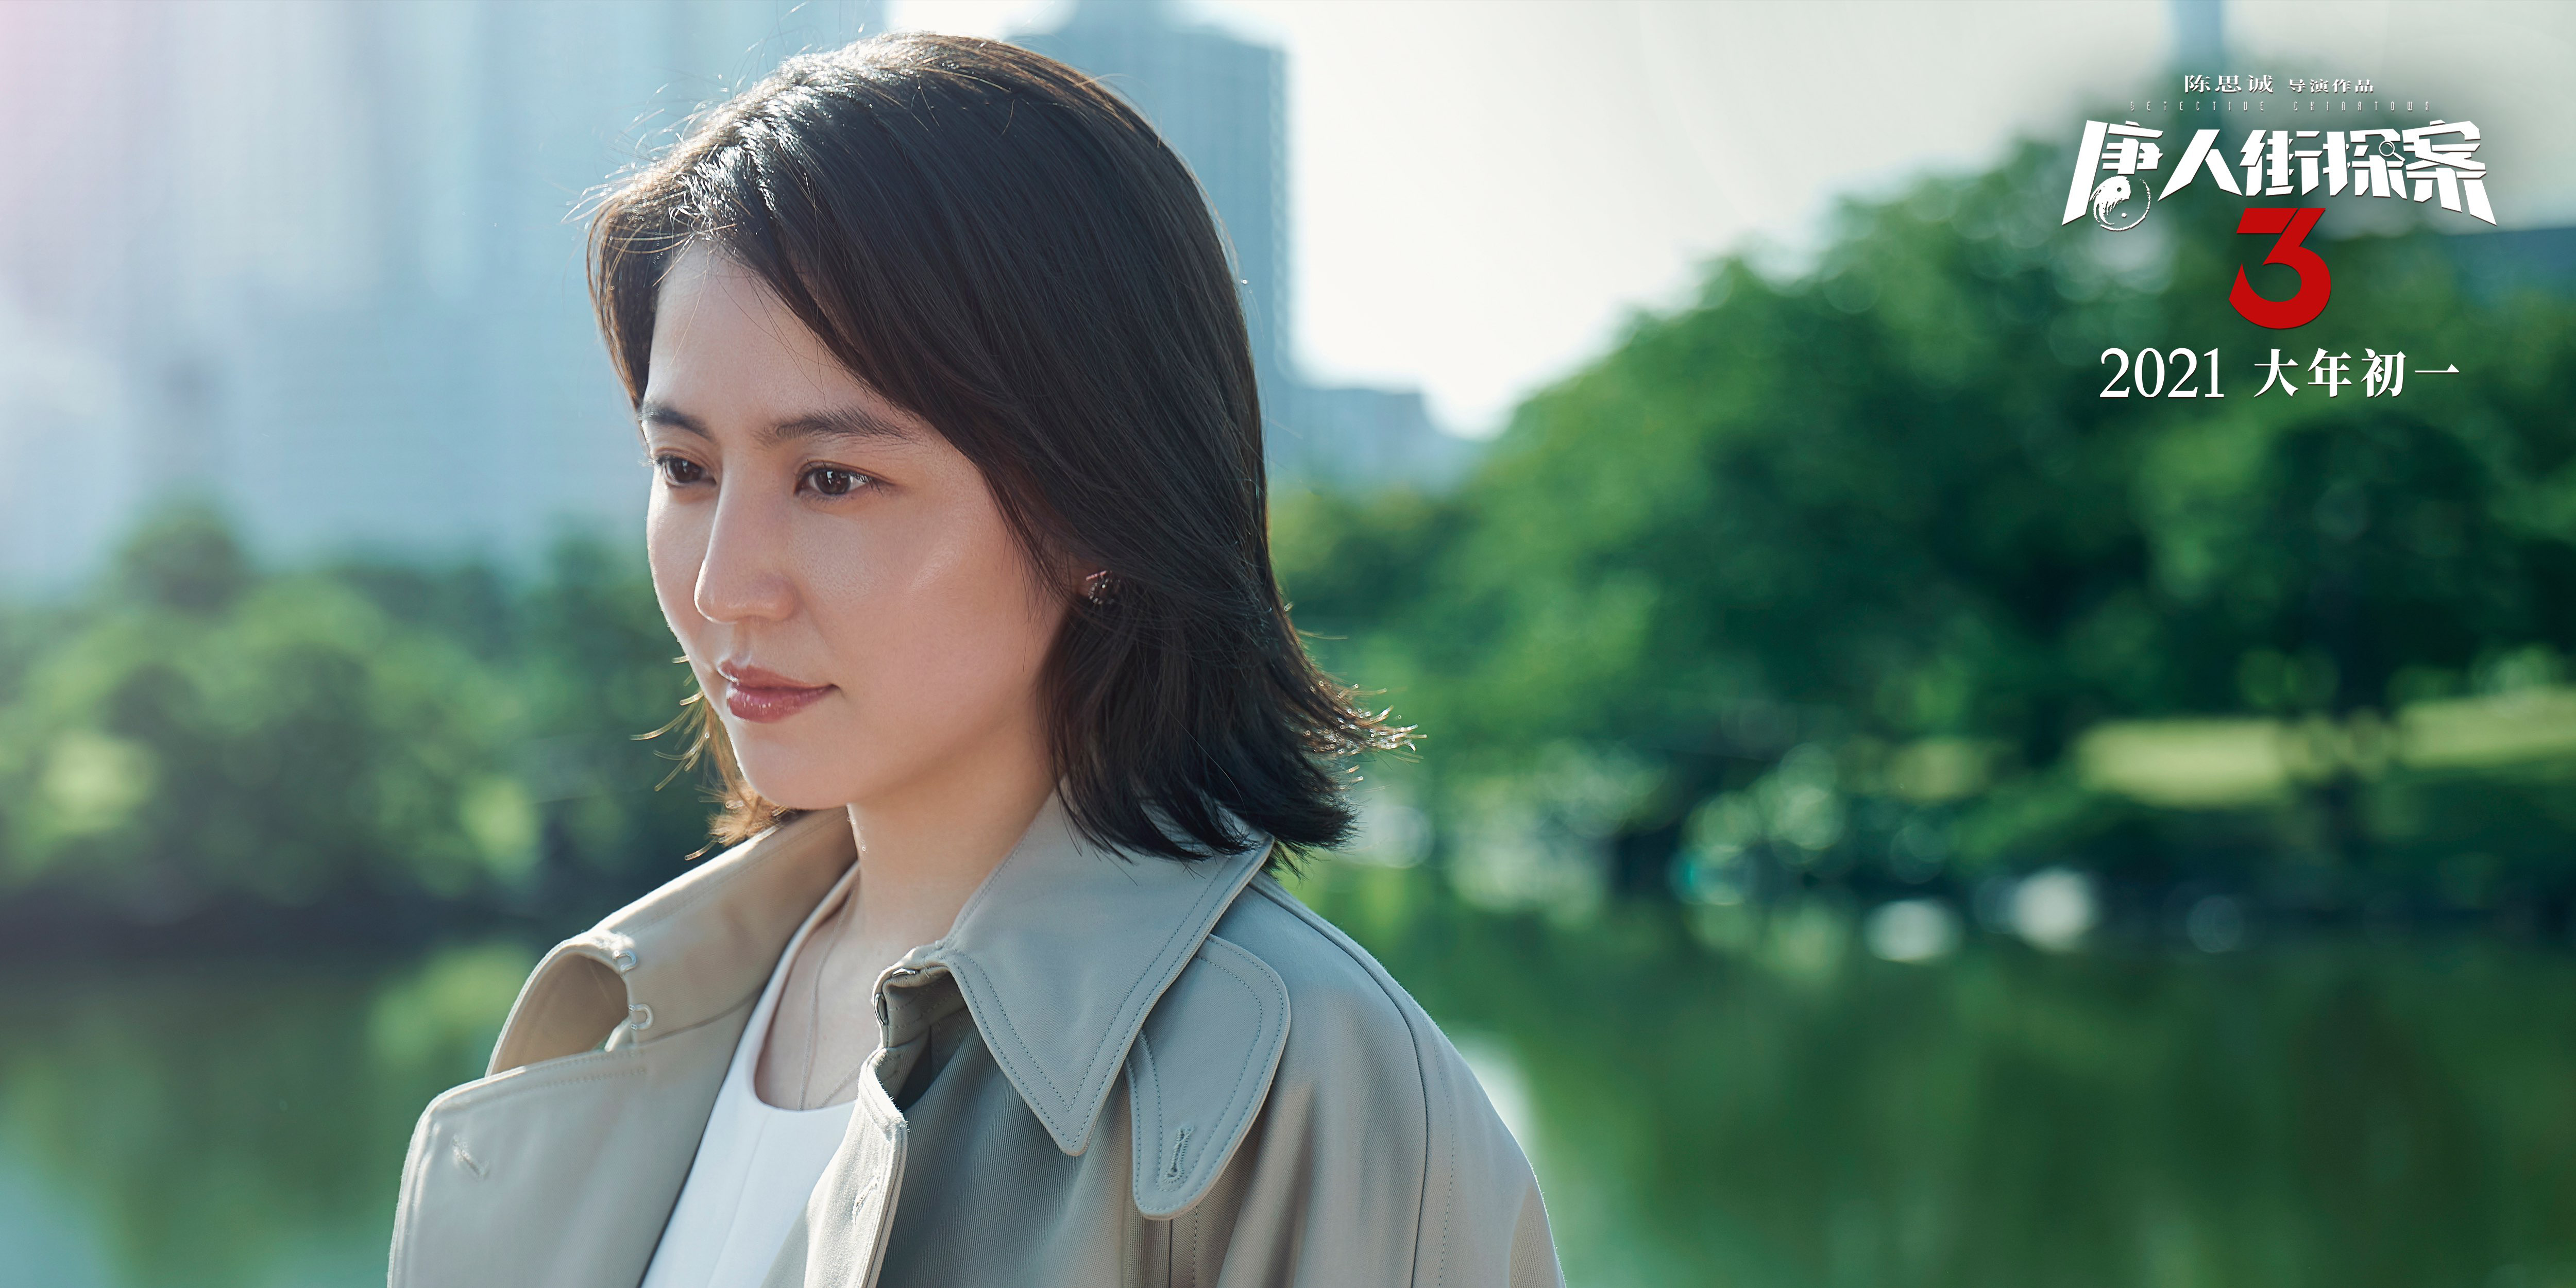 《唐人街探案3》集结亚洲侦探 长泽雅美惊喜加盟